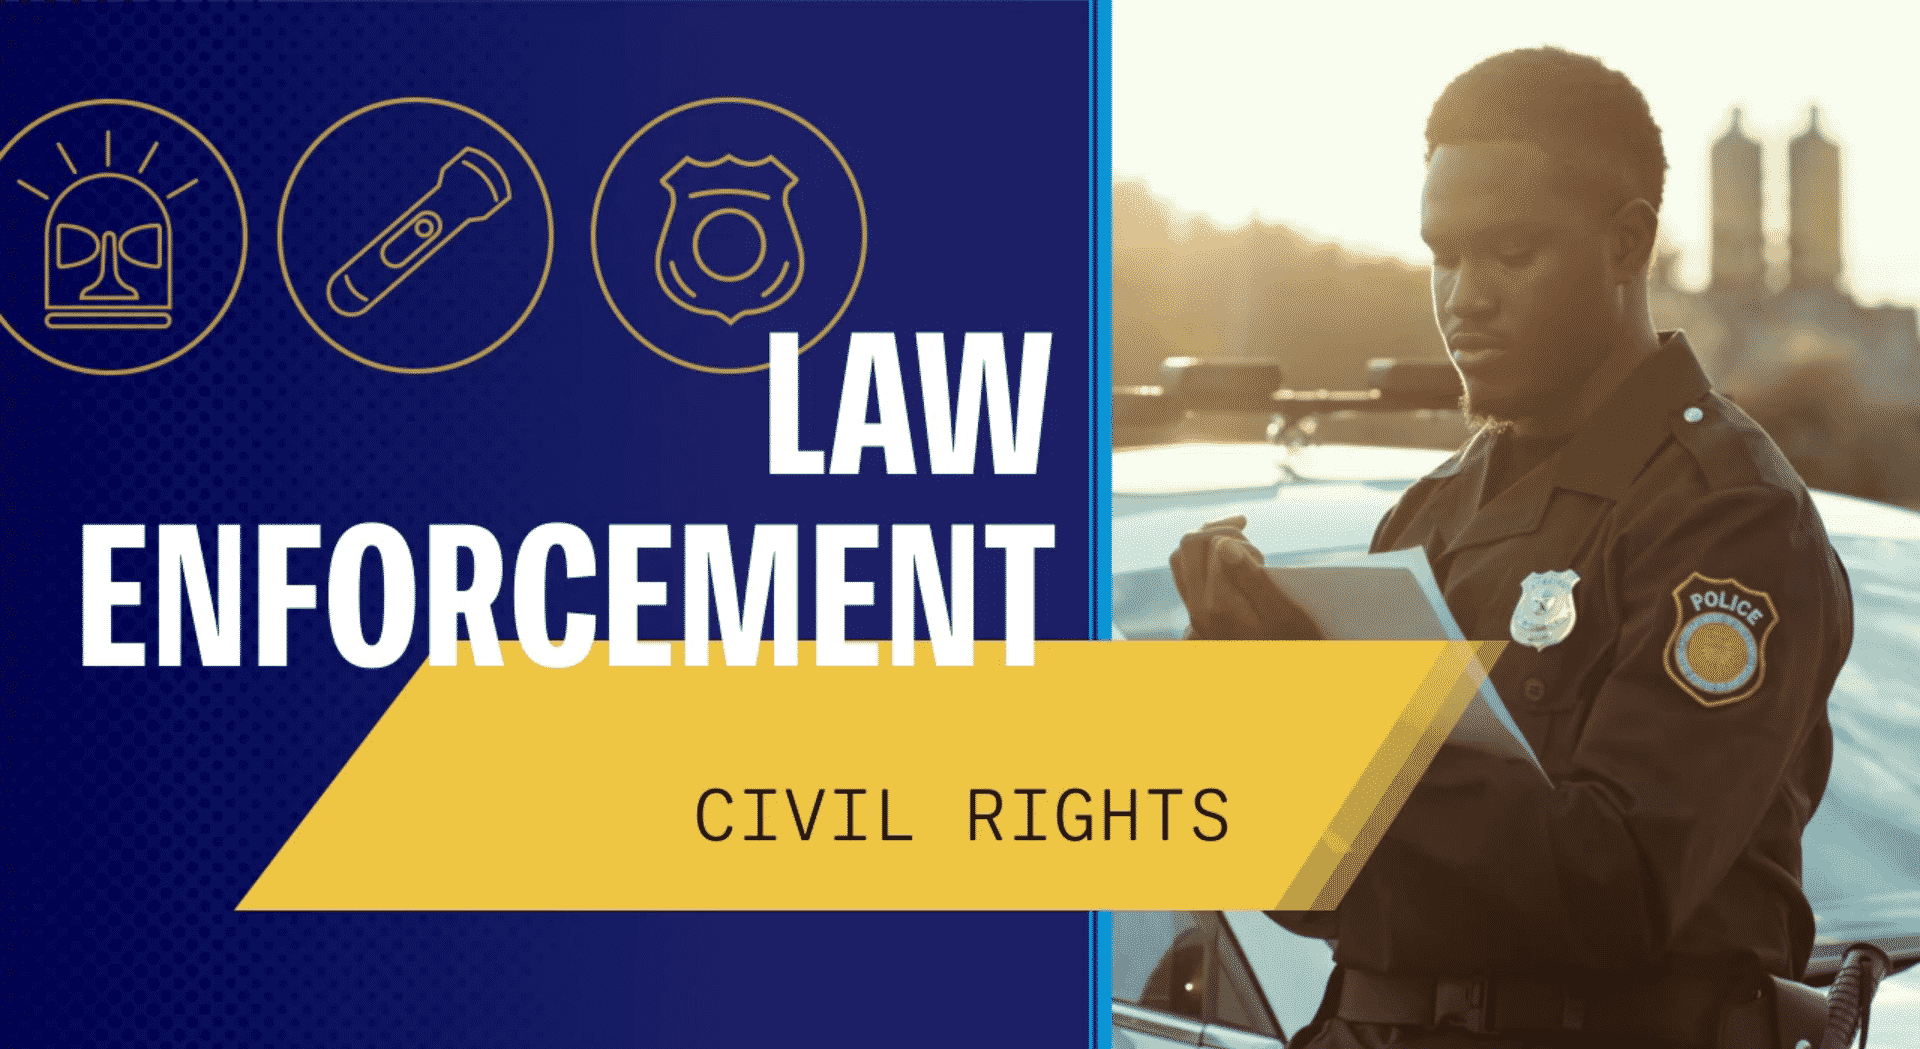 Lw Encforcement Civil Rights course title card